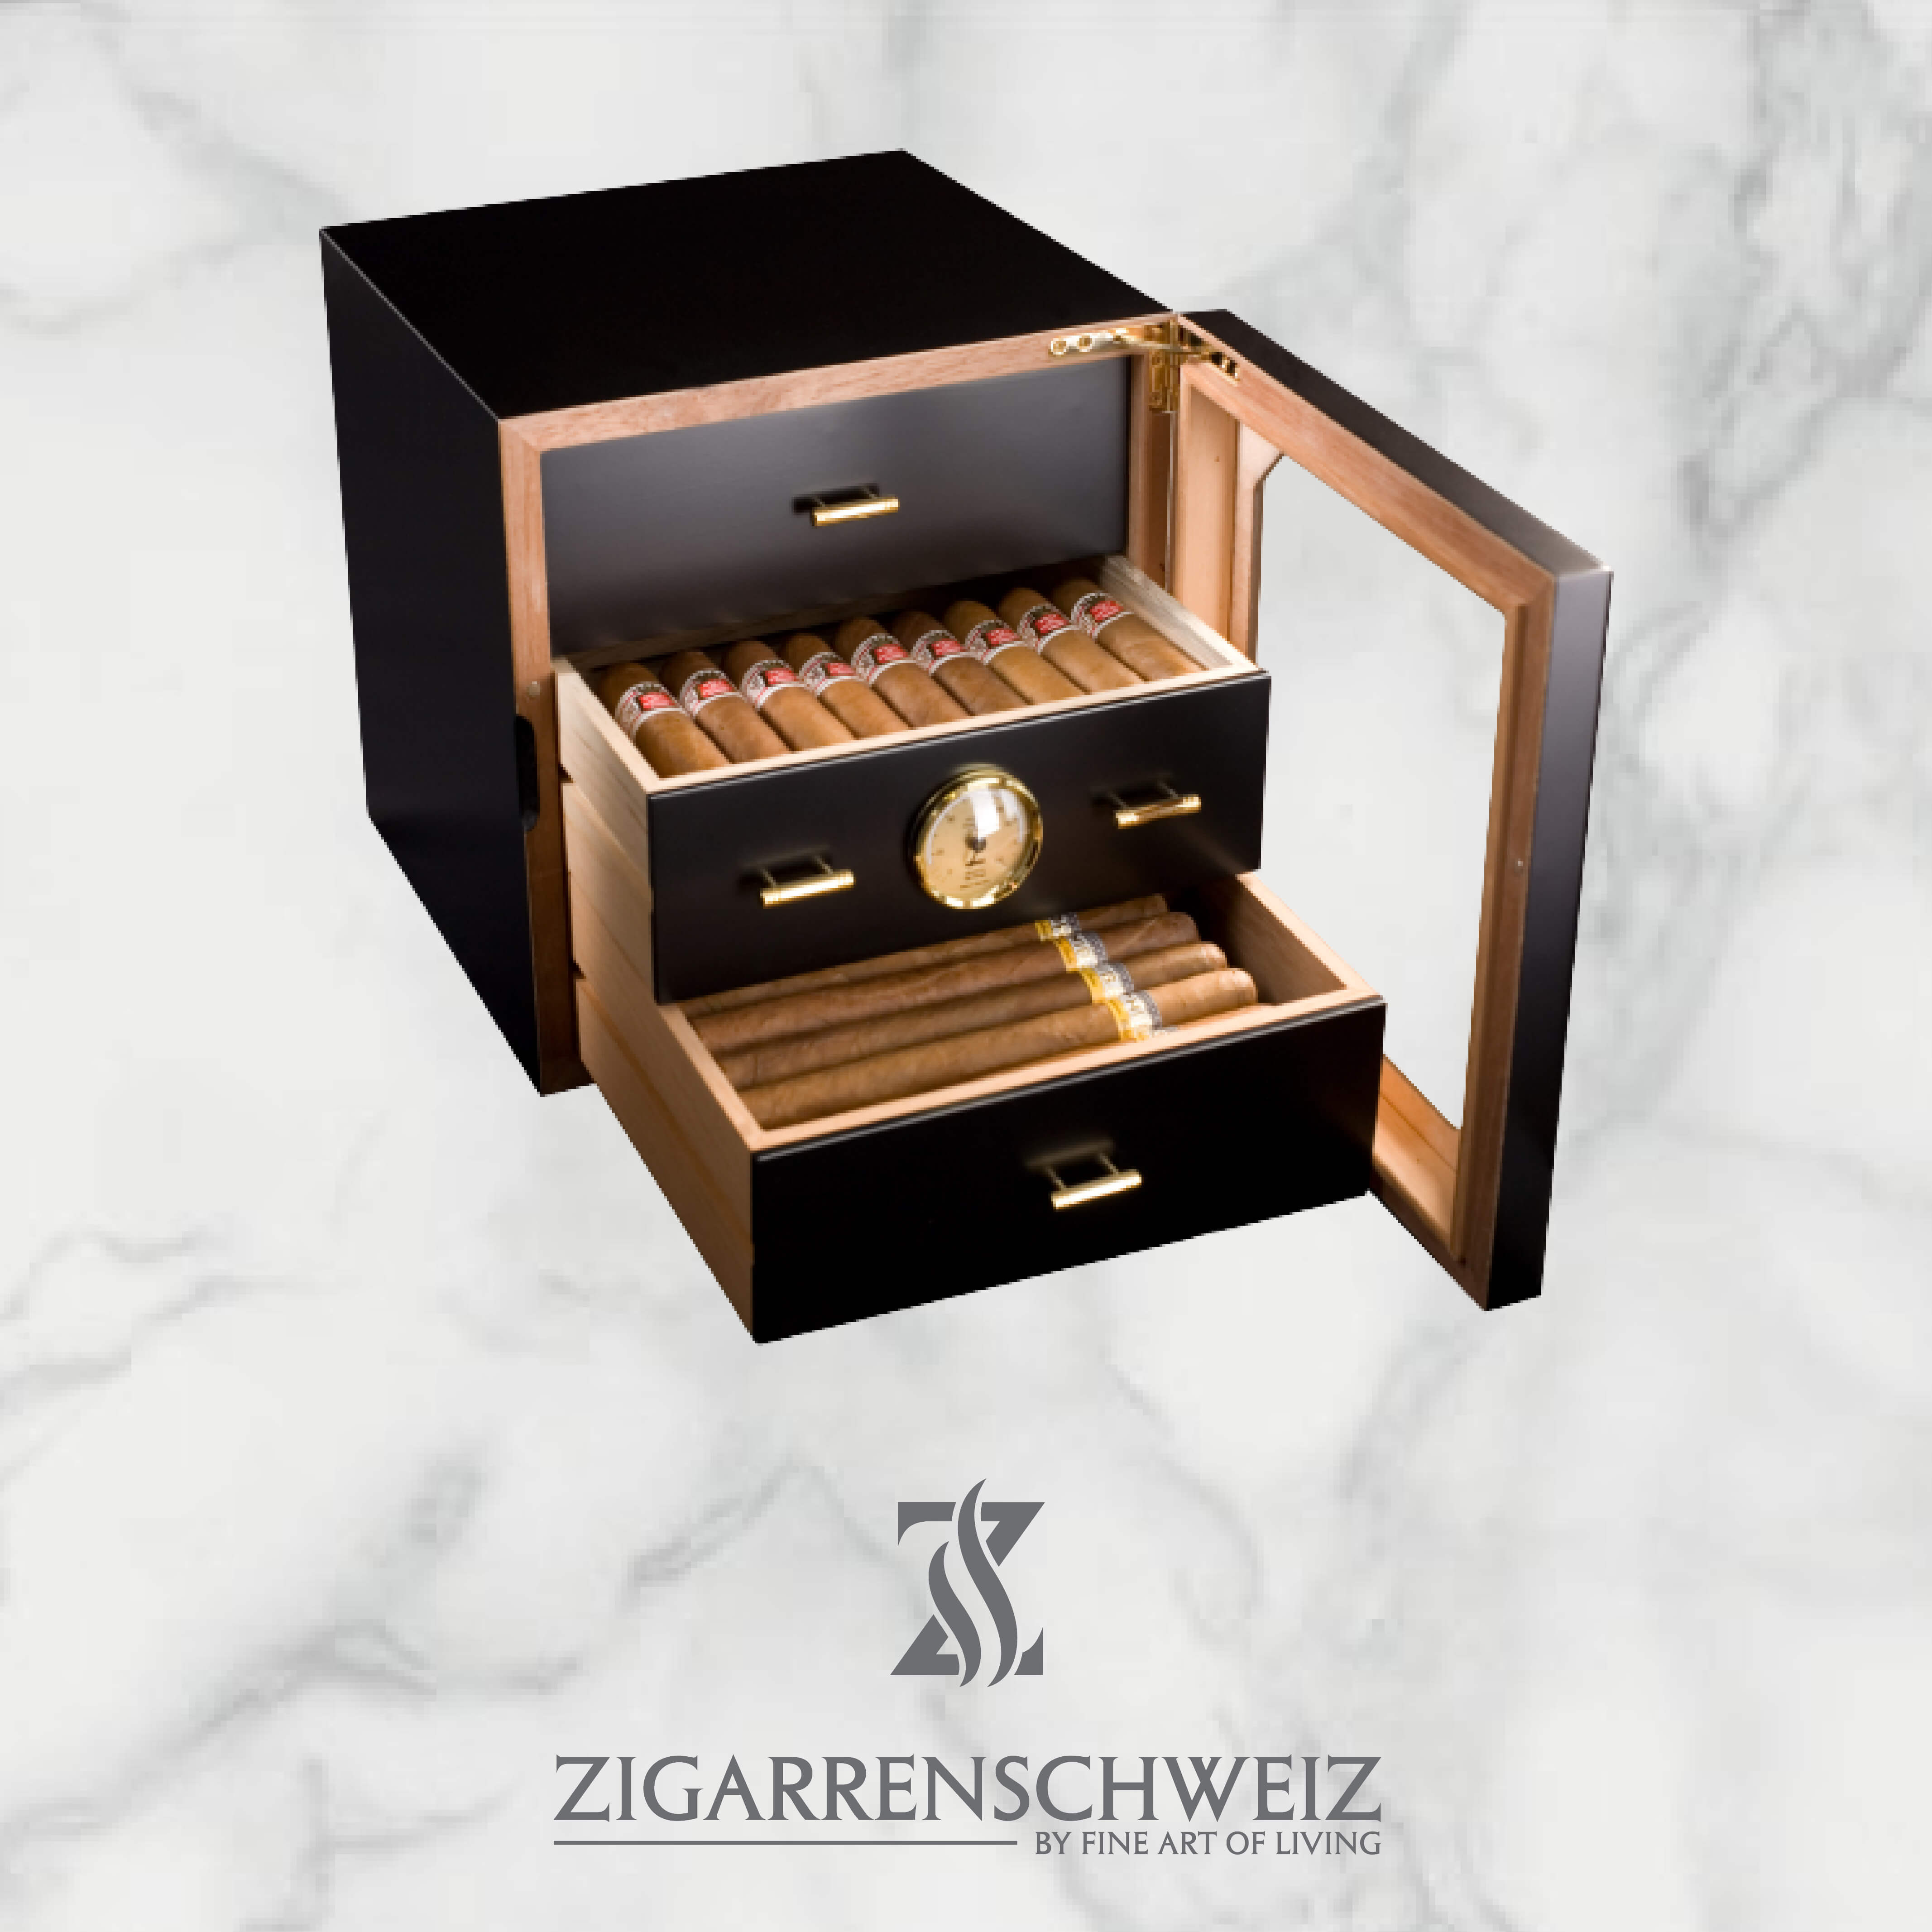 Adorini Chianti medium Deluxe Humidor in Schwarz für die Lagerung von bis zu 120 Robusto Zigarren, mit geöffneter Glastüre